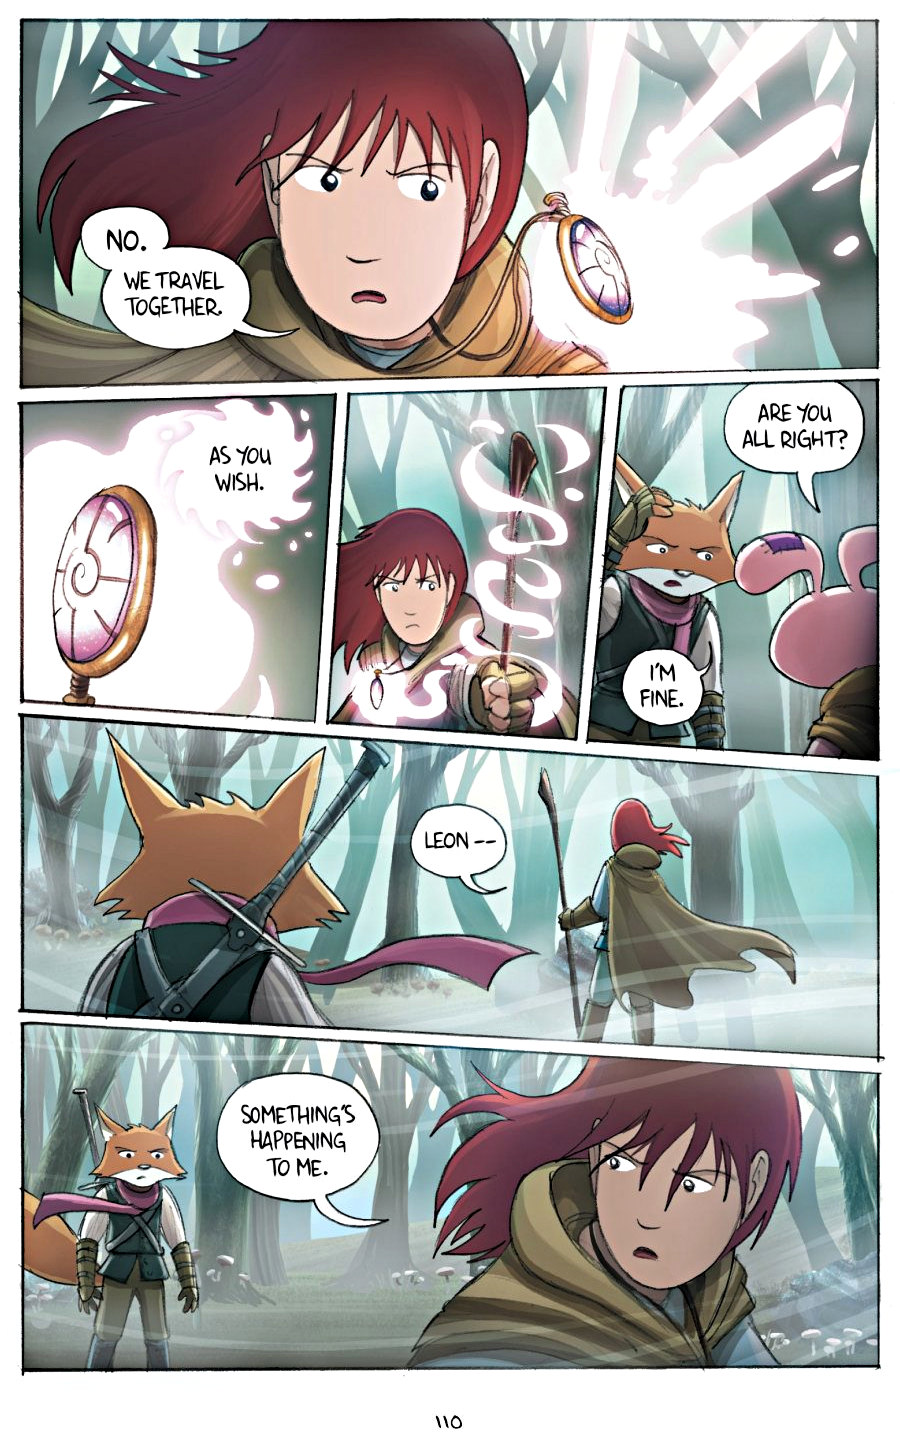 page 110 of amulet 2 stonekeeper's curse graphic novel by kazu kibuishi